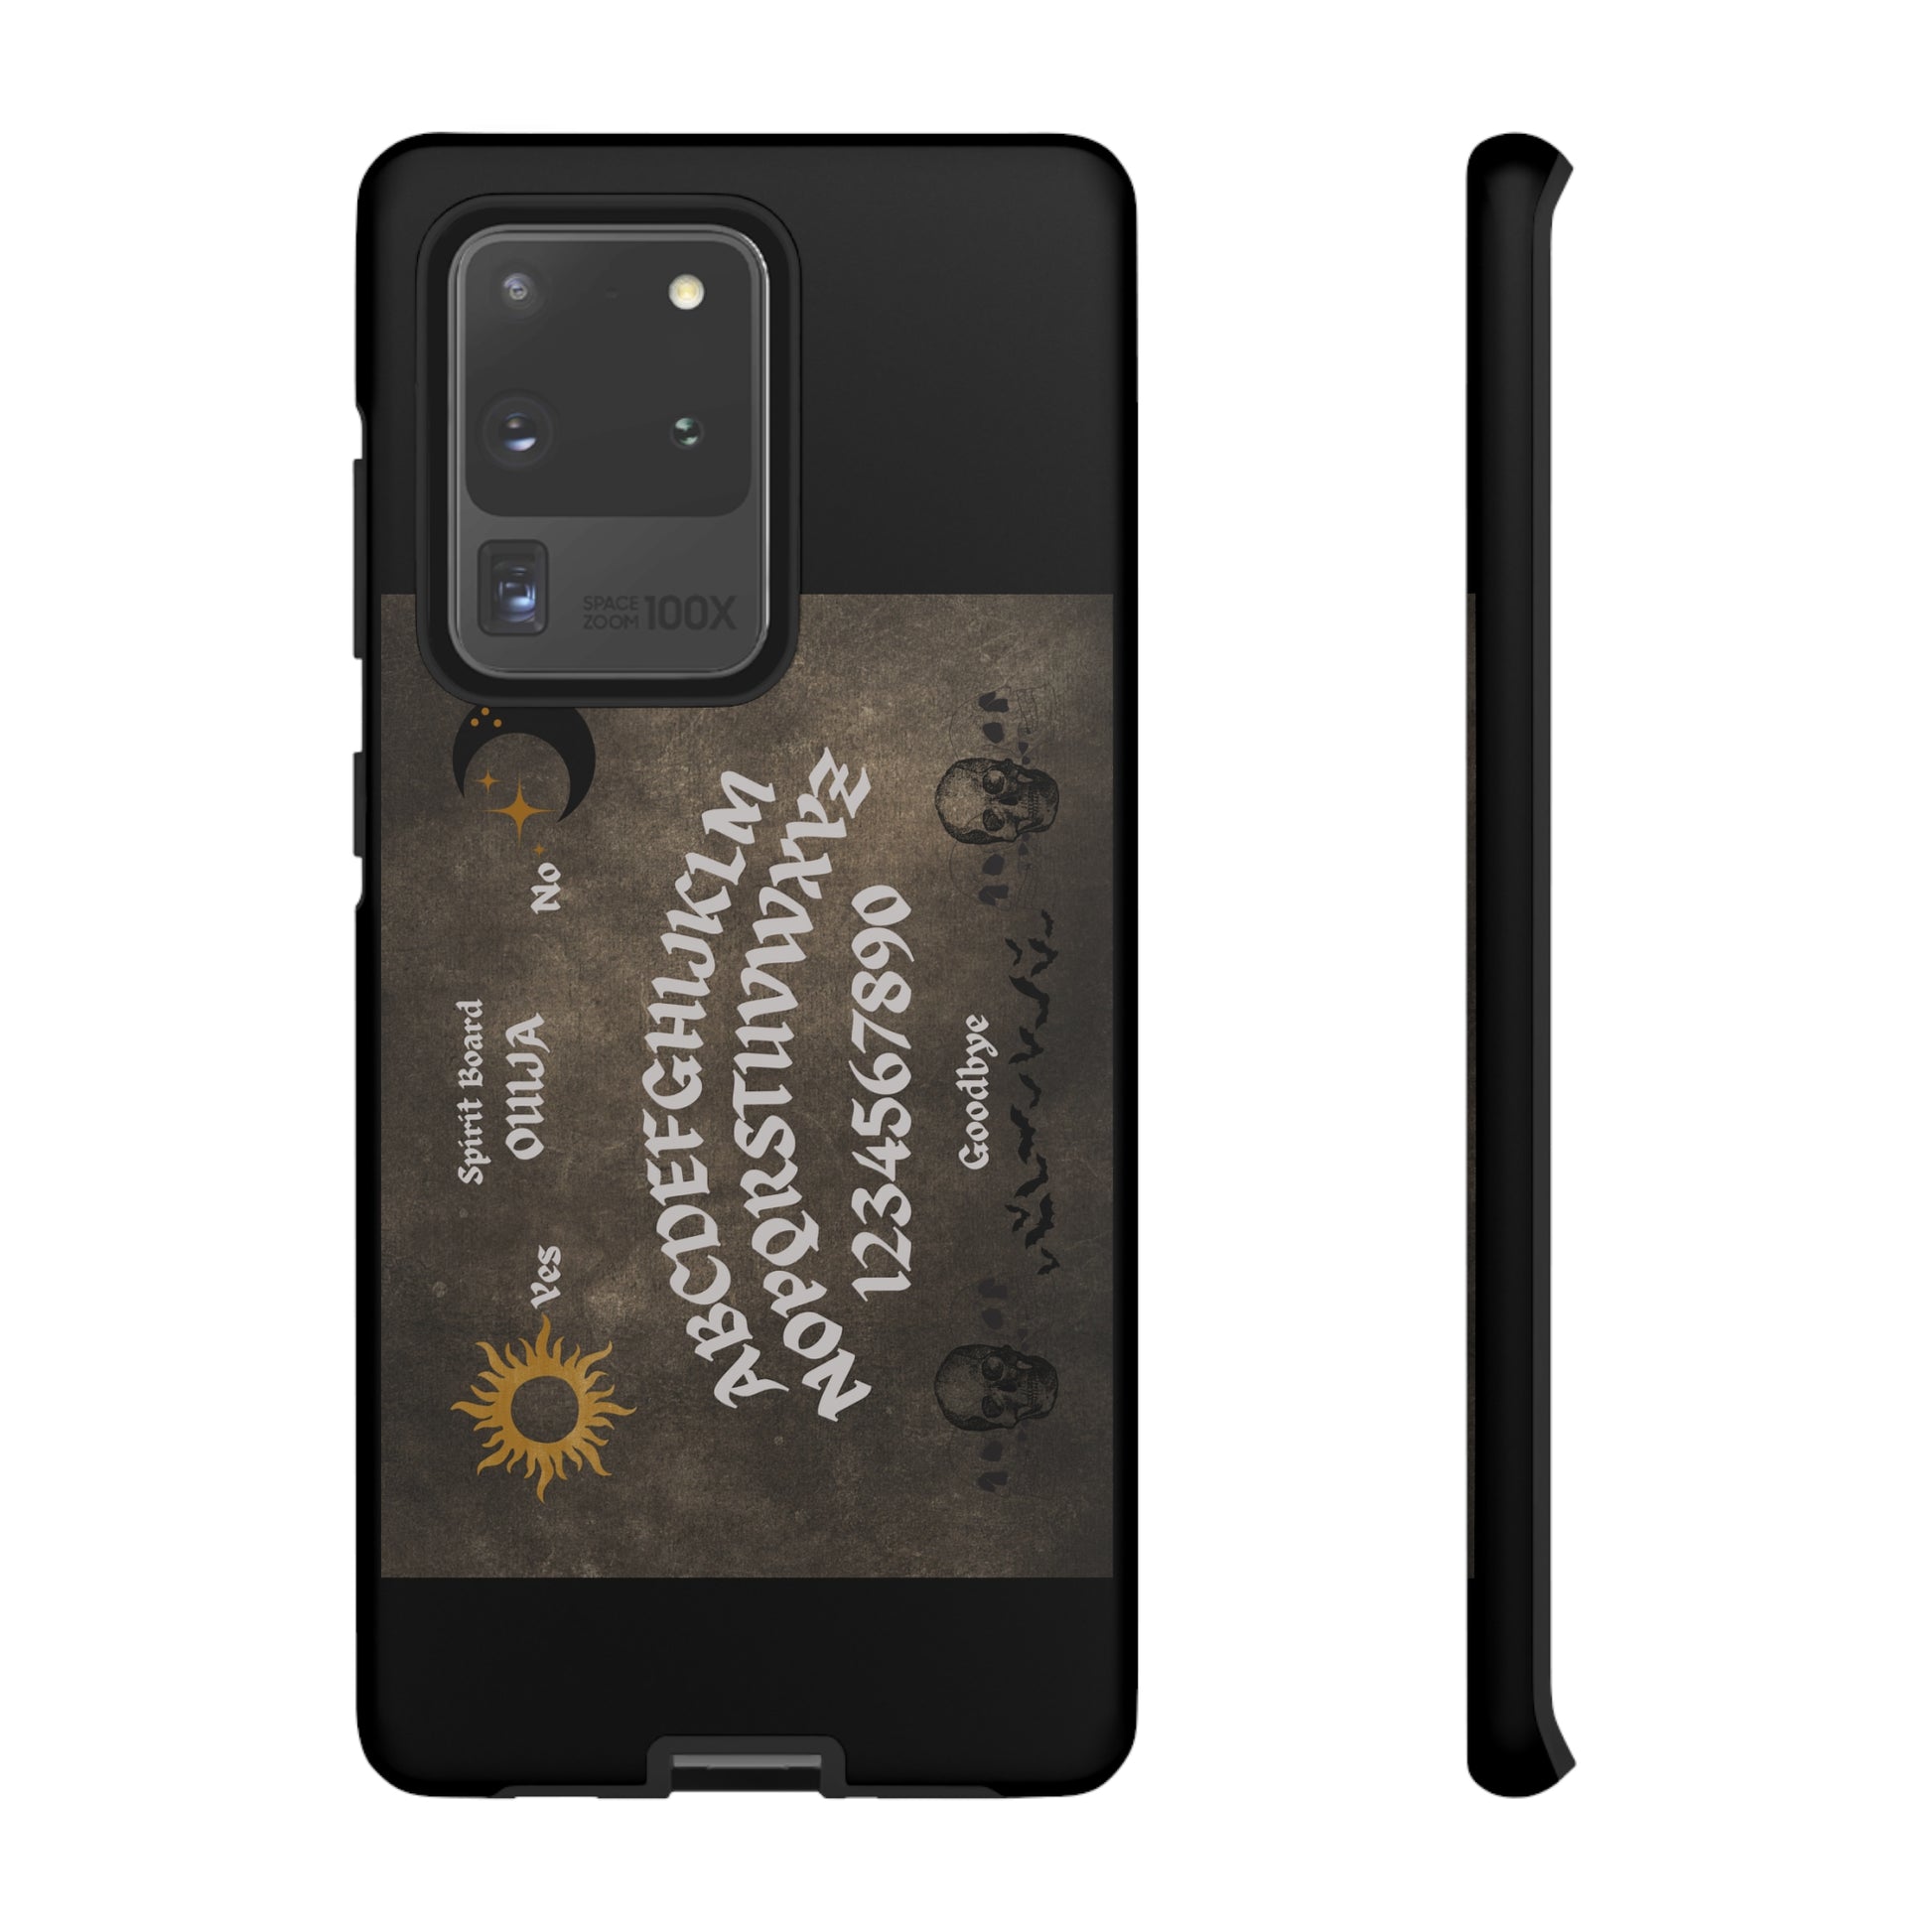 Spirit Ouija Board Tough Case for Samsung iPhone GooglePhone CaseVTZdesignsSamsung Galaxy S20 UltraMatteAccessoriesboardGlossy